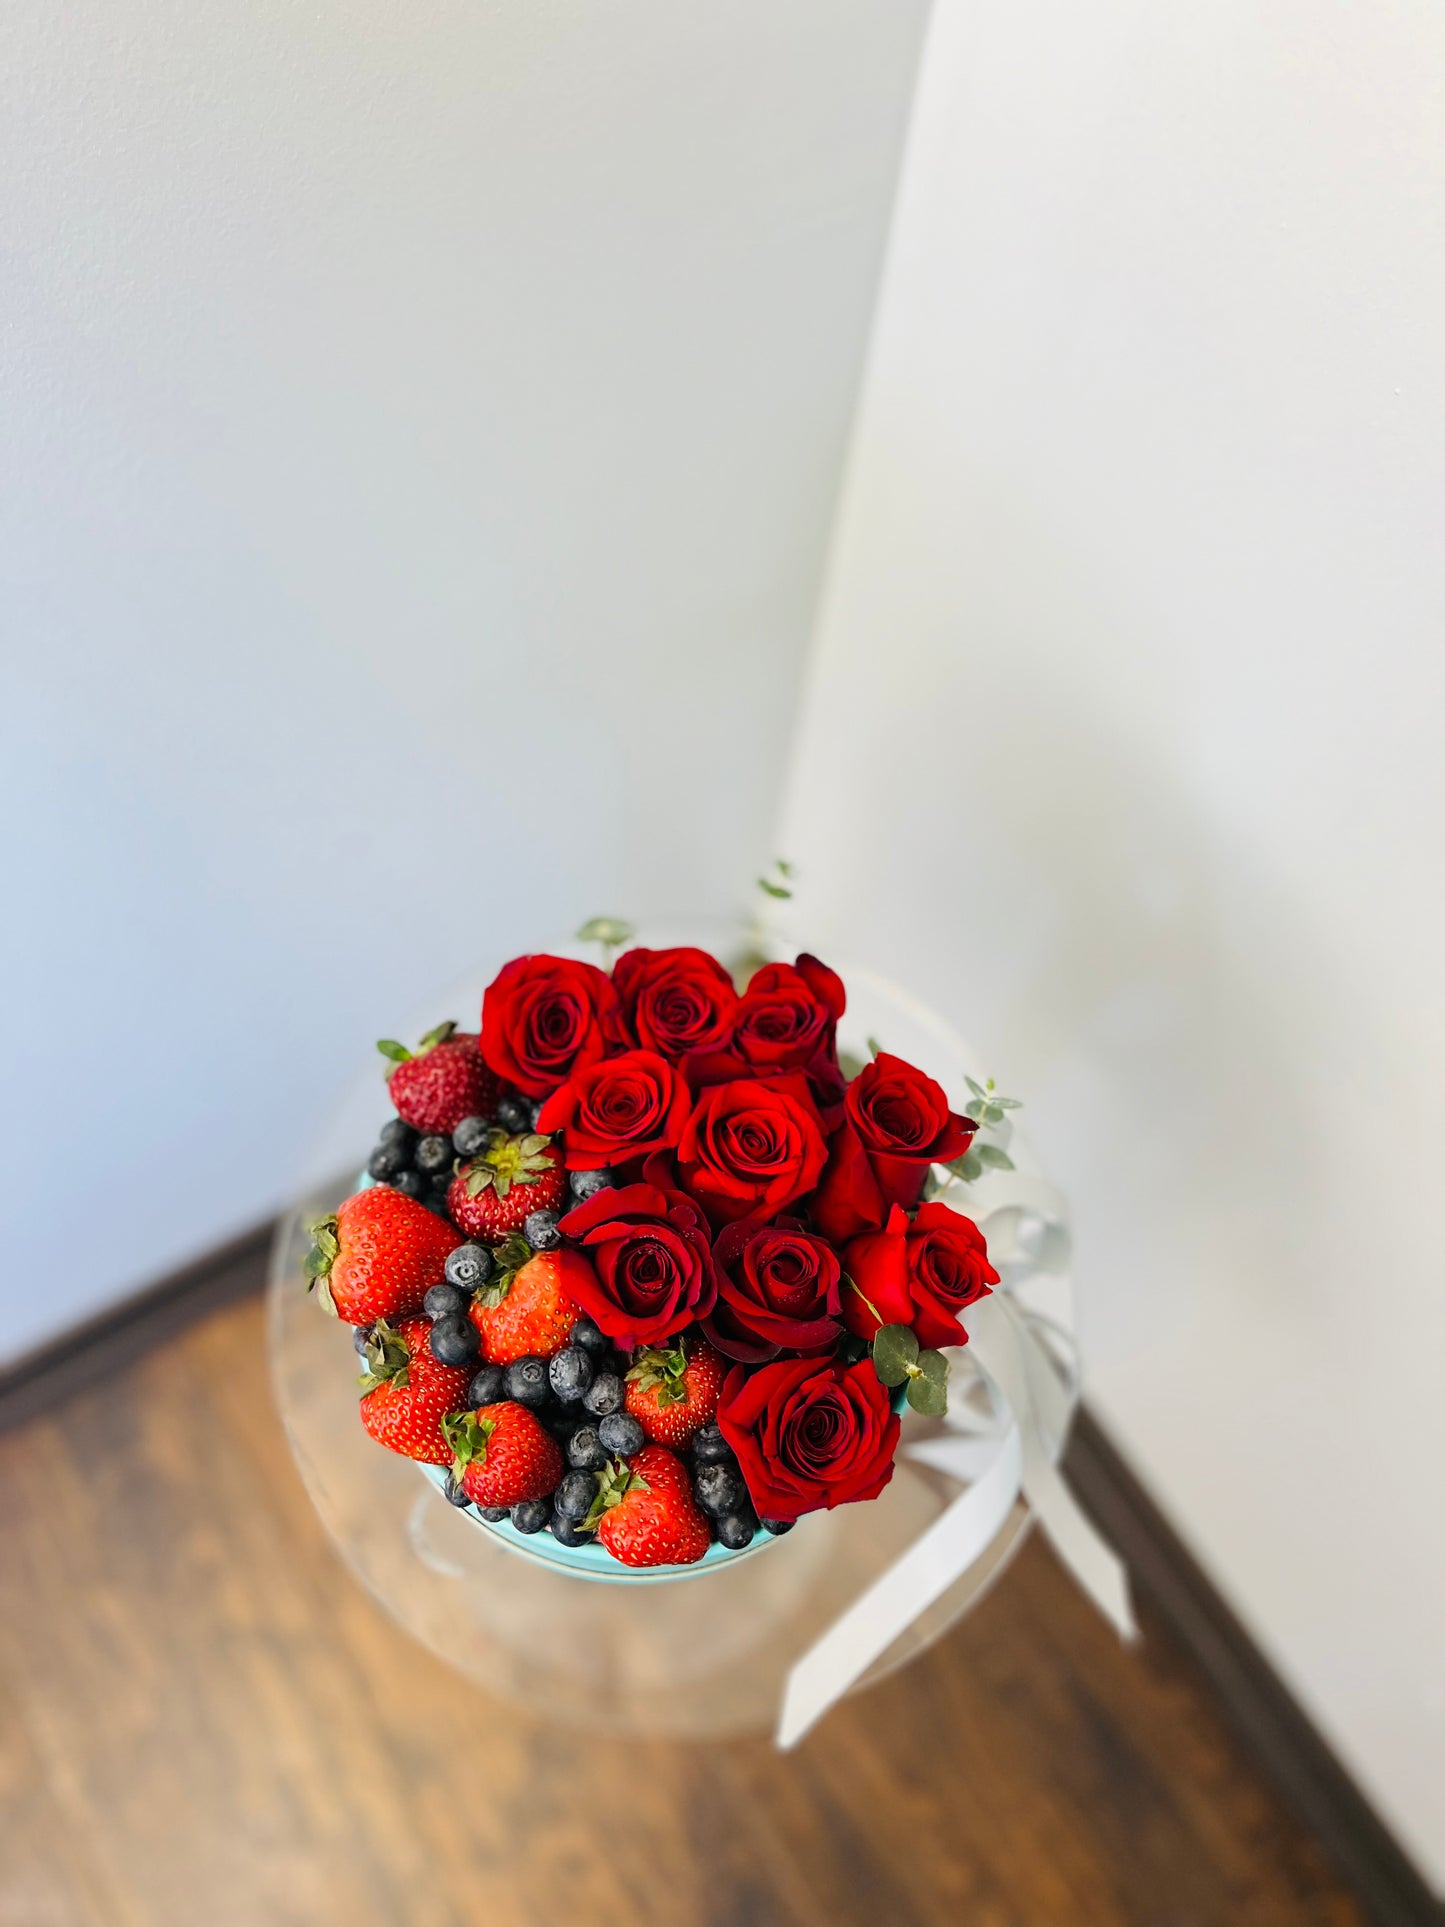 Roses & Berries